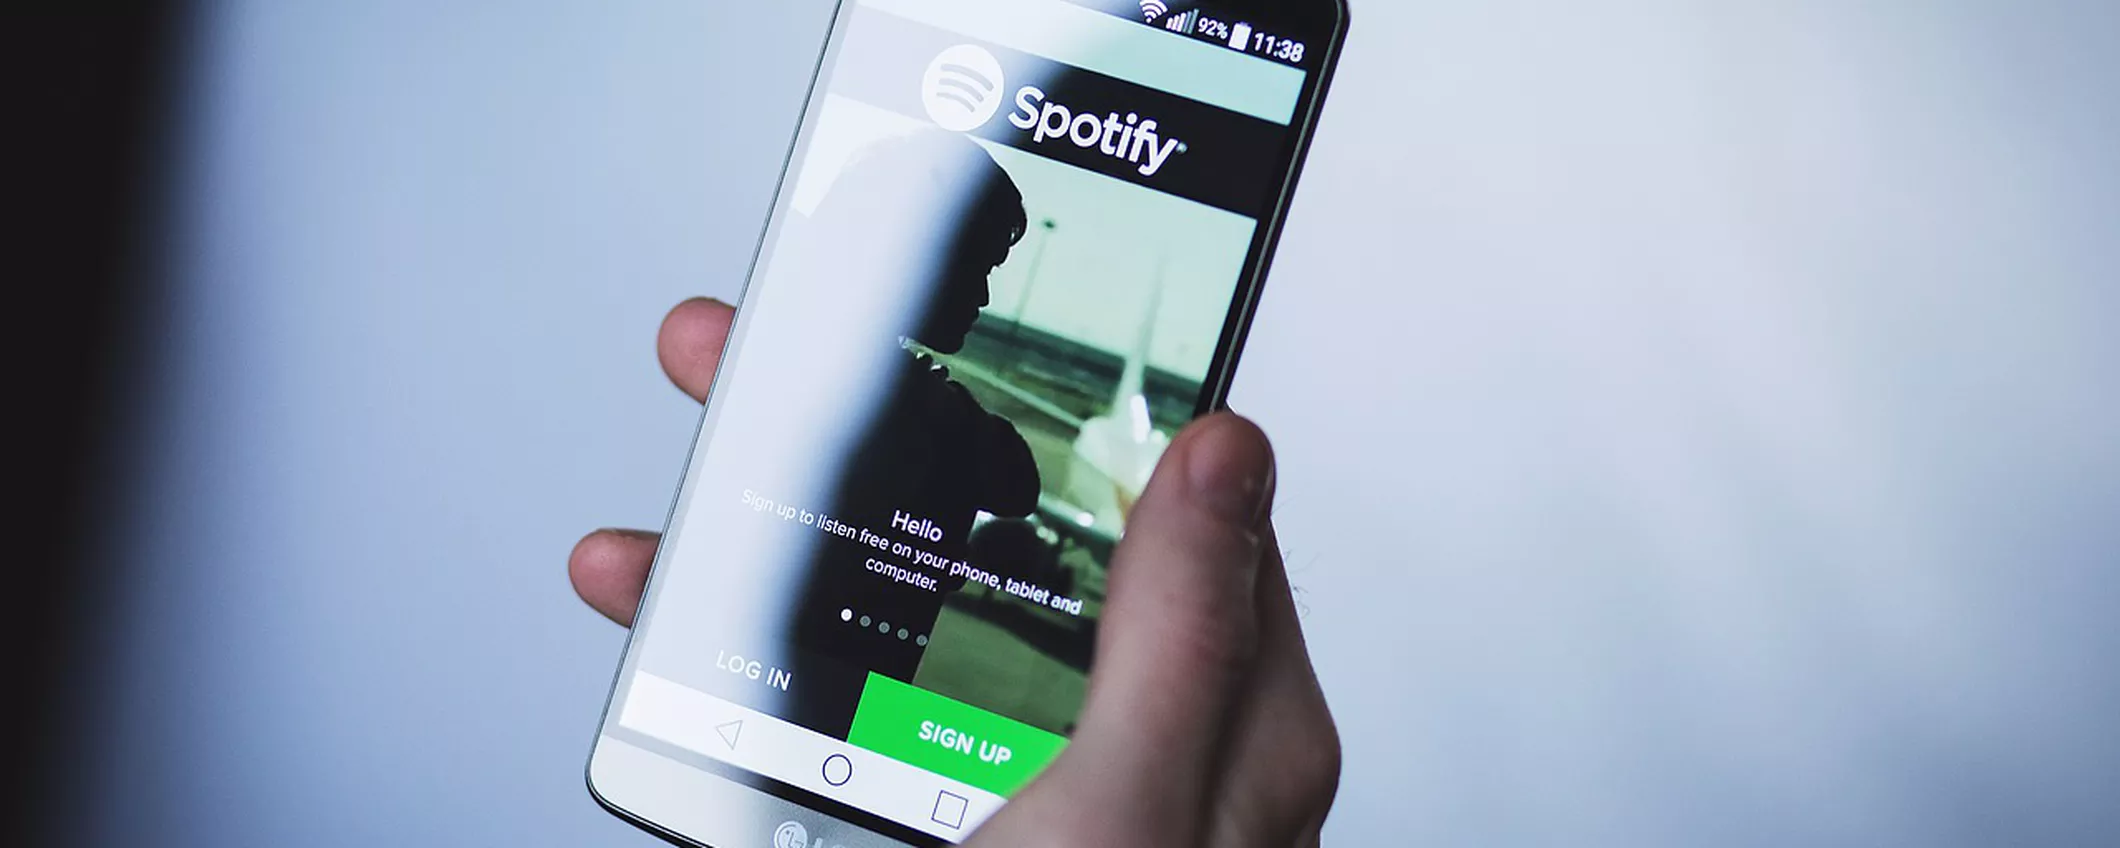 Spotify video per sfidare YouTube Music